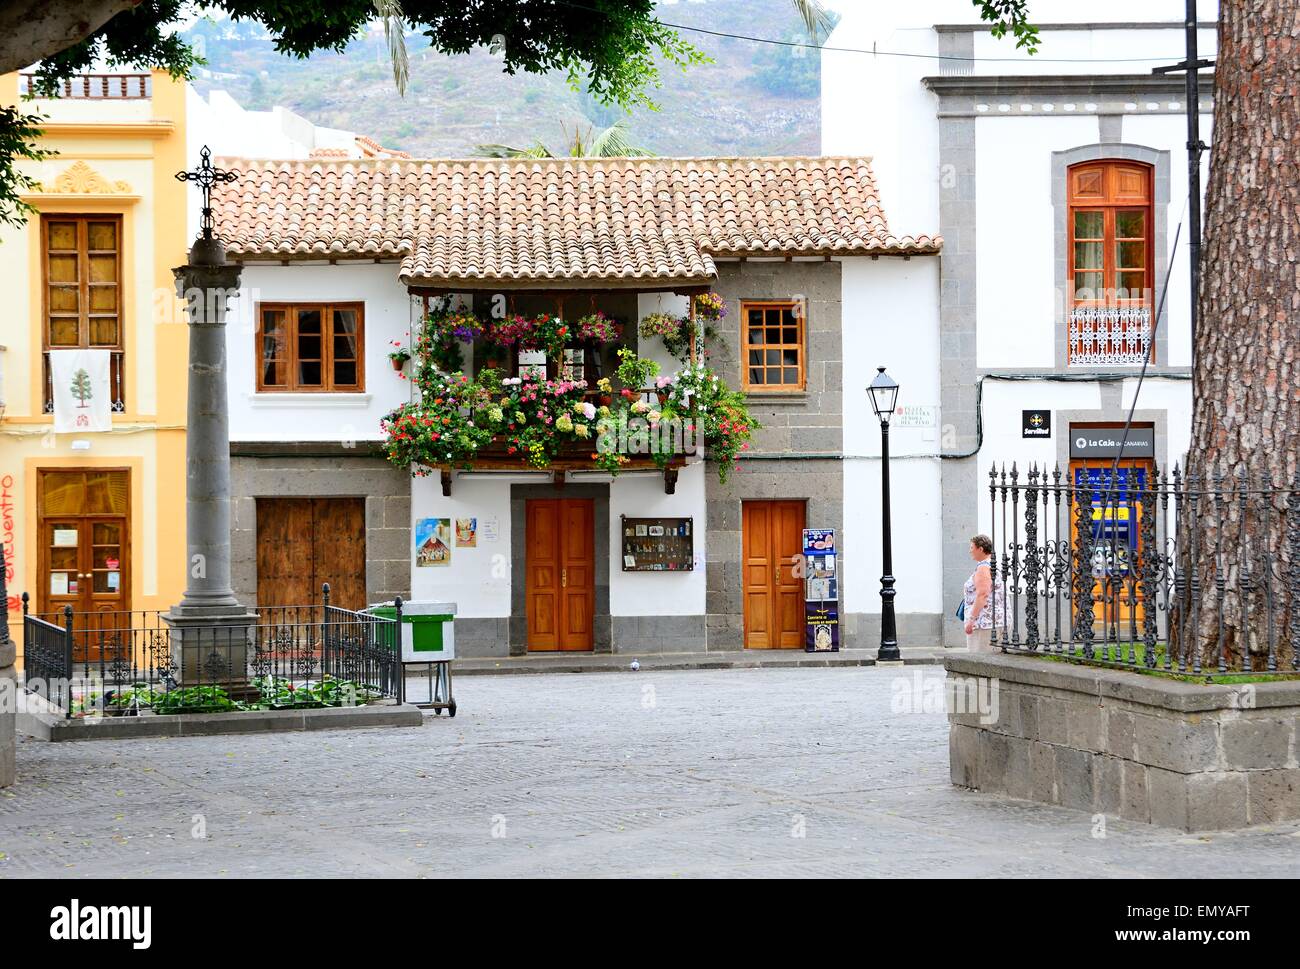 L'architecture typique des maisons avec des balcons décorés de fleurs à Teror, Gran Canaria, Espagne. Banque D'Images